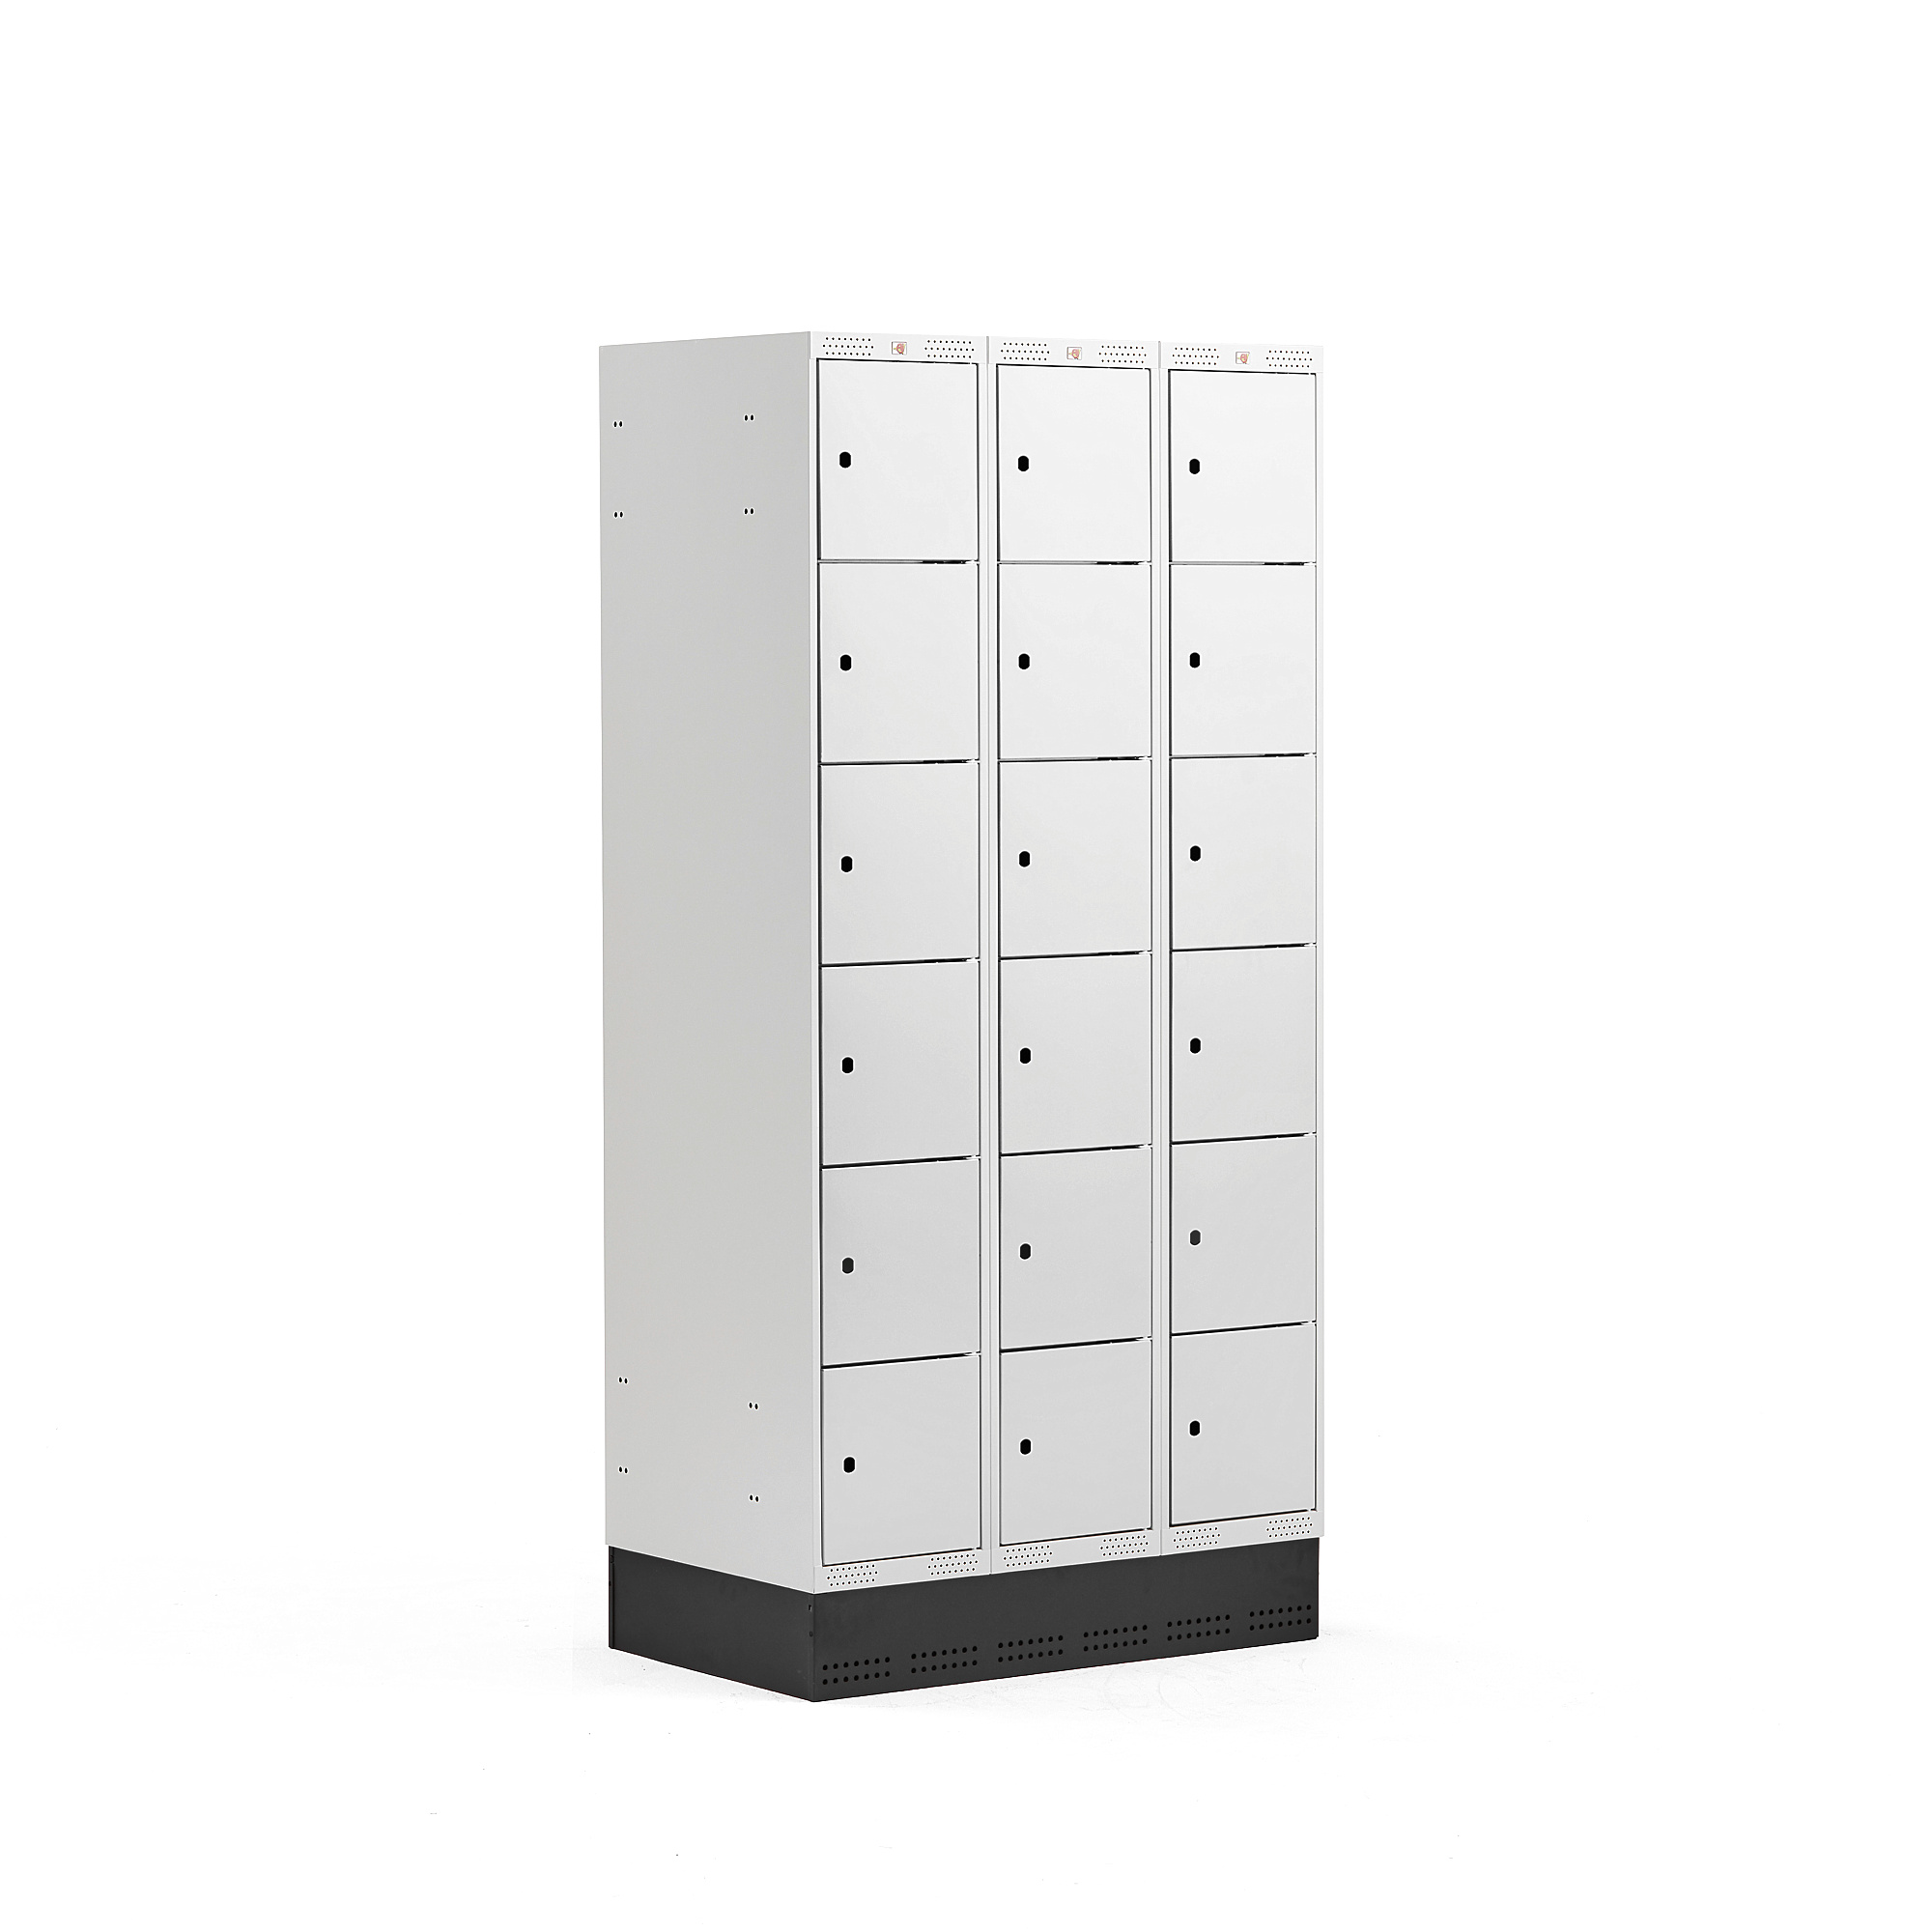 Boxová šatní skříň CLASSIC, se soklem, 3 sekce, 18 boxů, 1890x900x550 mm, šedé dveře